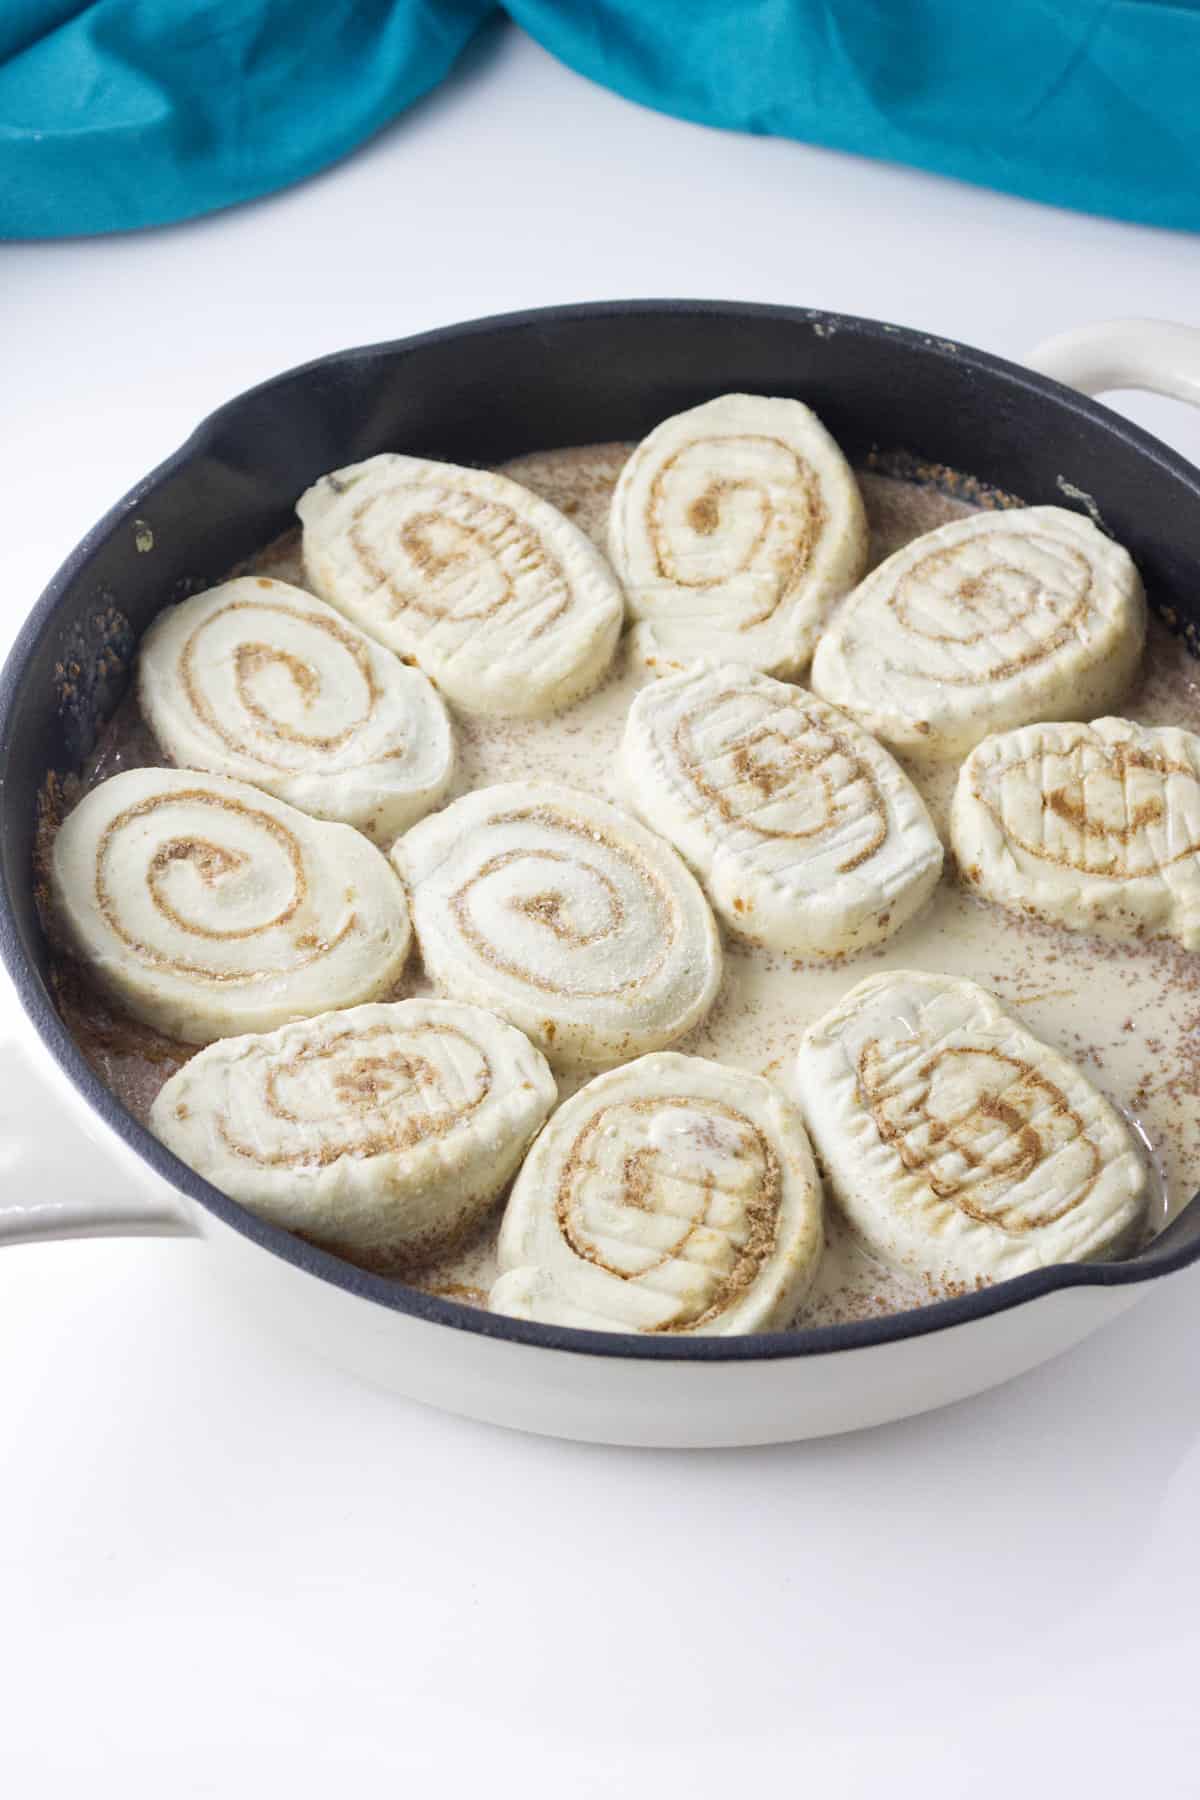 frozen cinnamon rolls in pan with heavy cream.